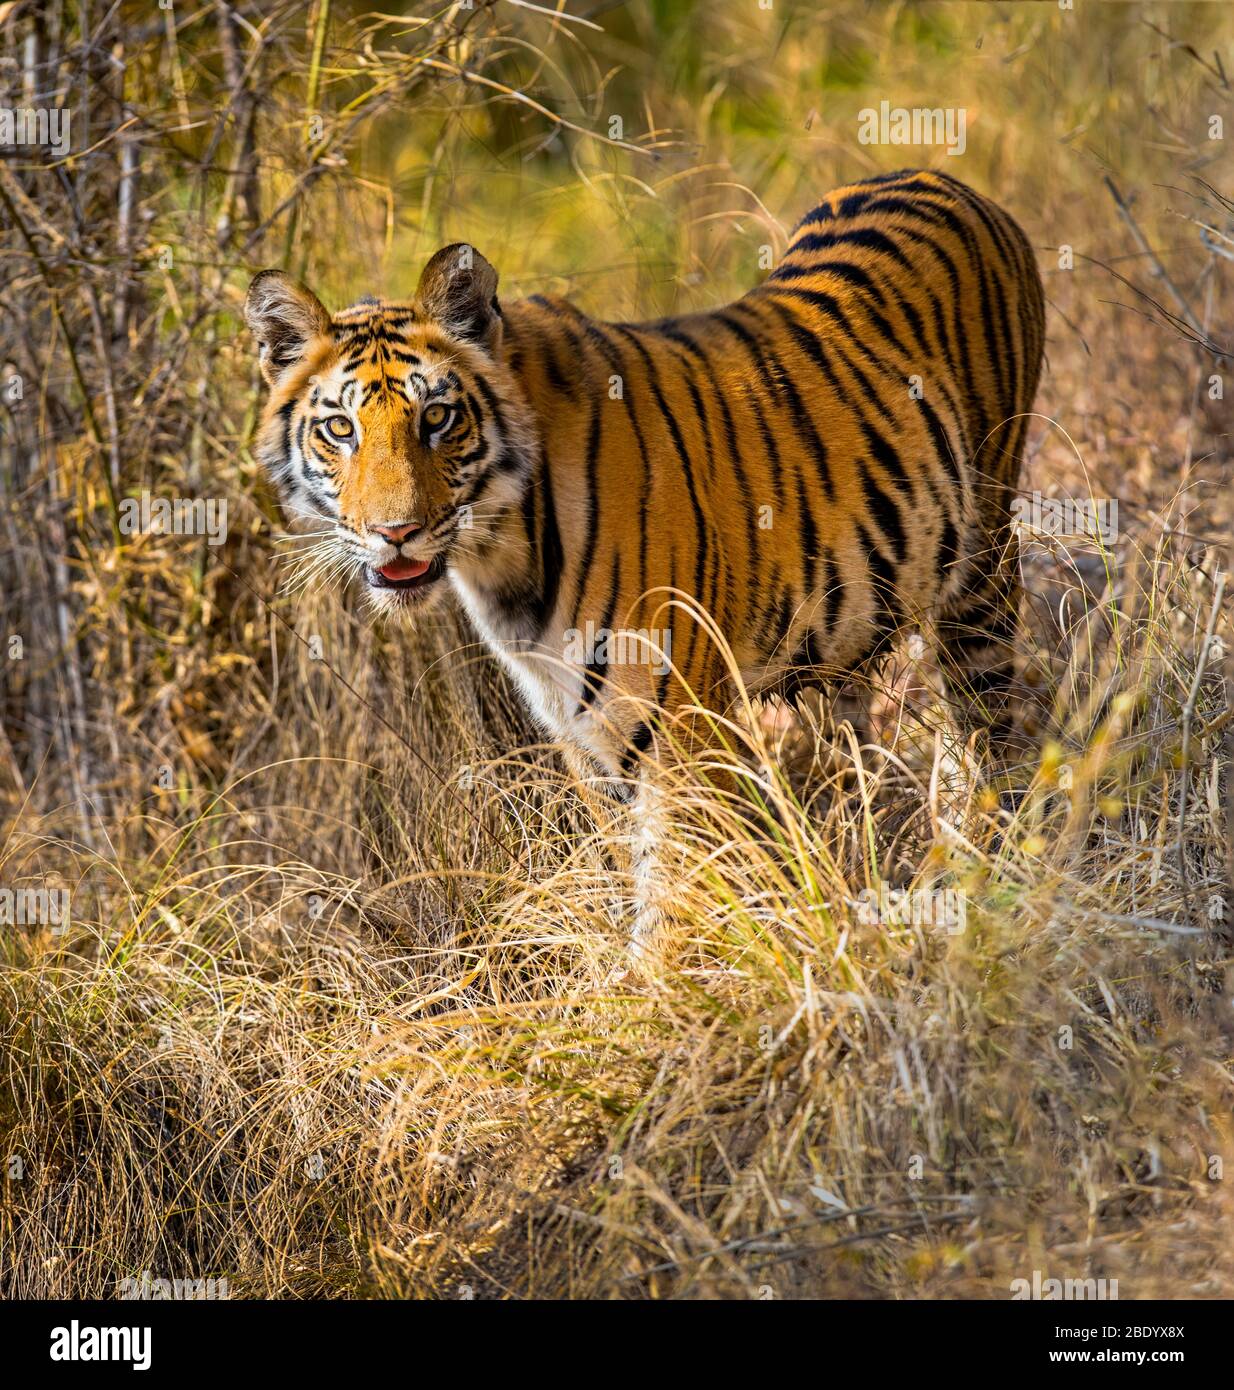 Bengal tiger (Panthera tigris) among grass, India Stock Photo